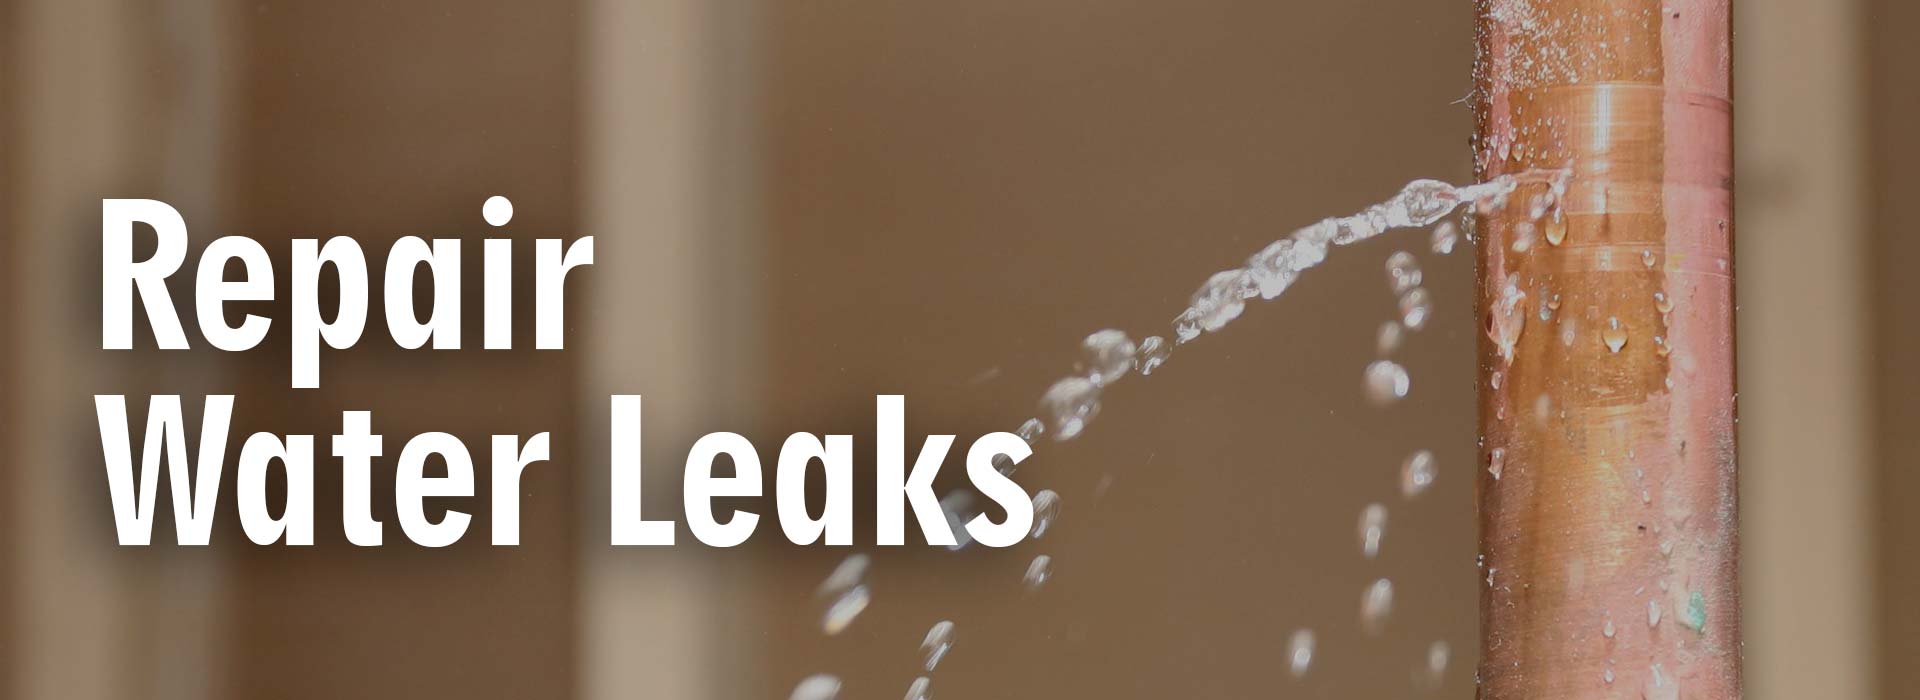 Repair Water Leaks in nyc